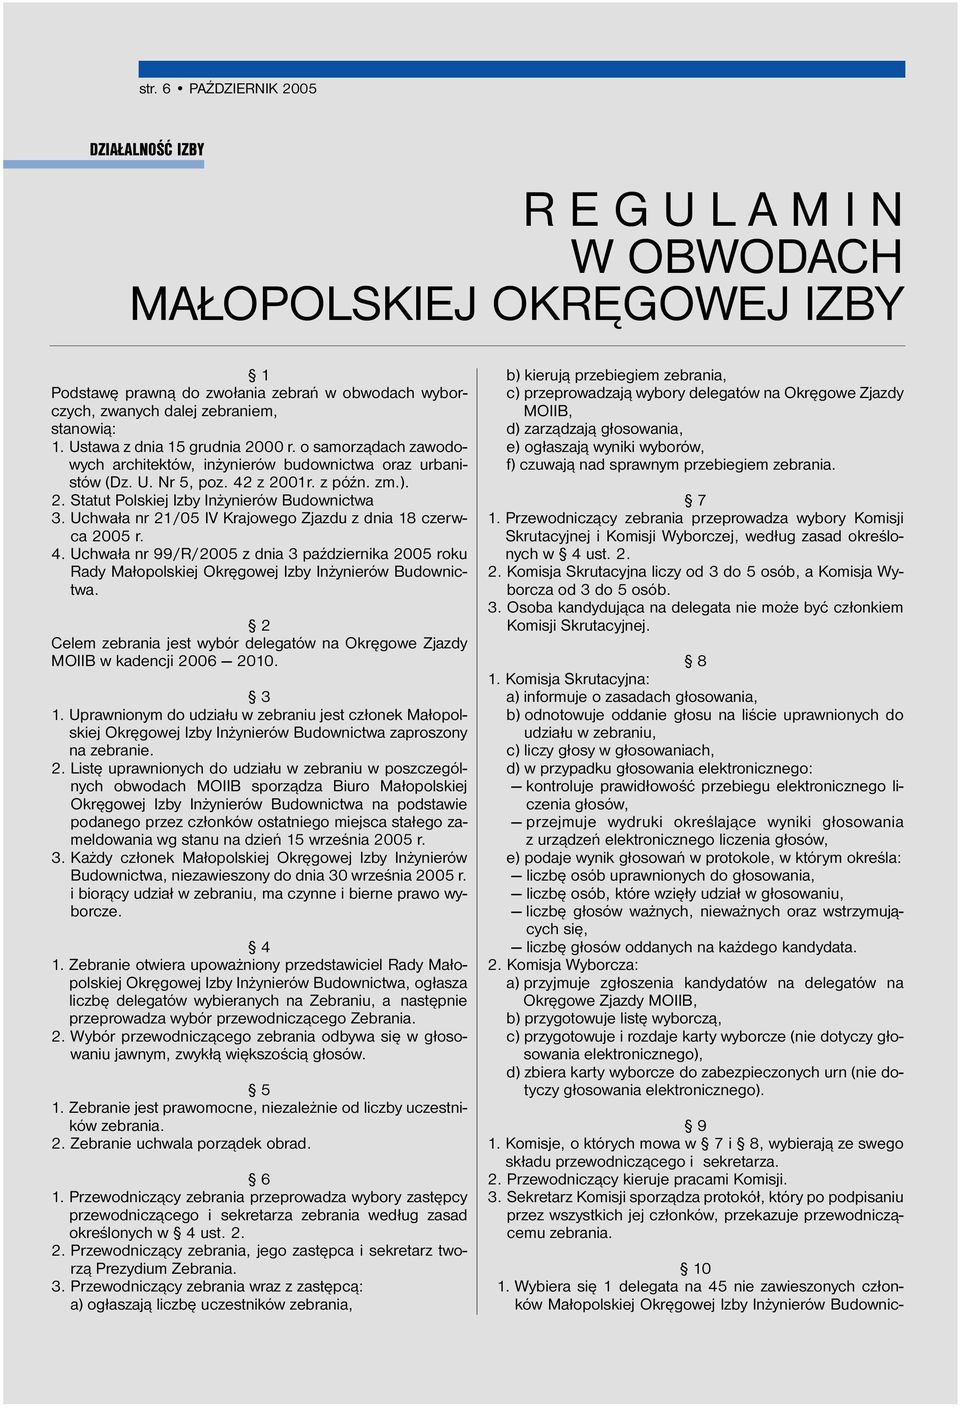 Uchwała nr 21/05 IV Krajowego Zjazdu z dnia 18 czerwca 2005 r. 4. Uchwała nr 99/R/2005 z dnia 3 października 2005 roku Rady Małopolskiej Okręgowej Izby Inżynierów Budownictwa.